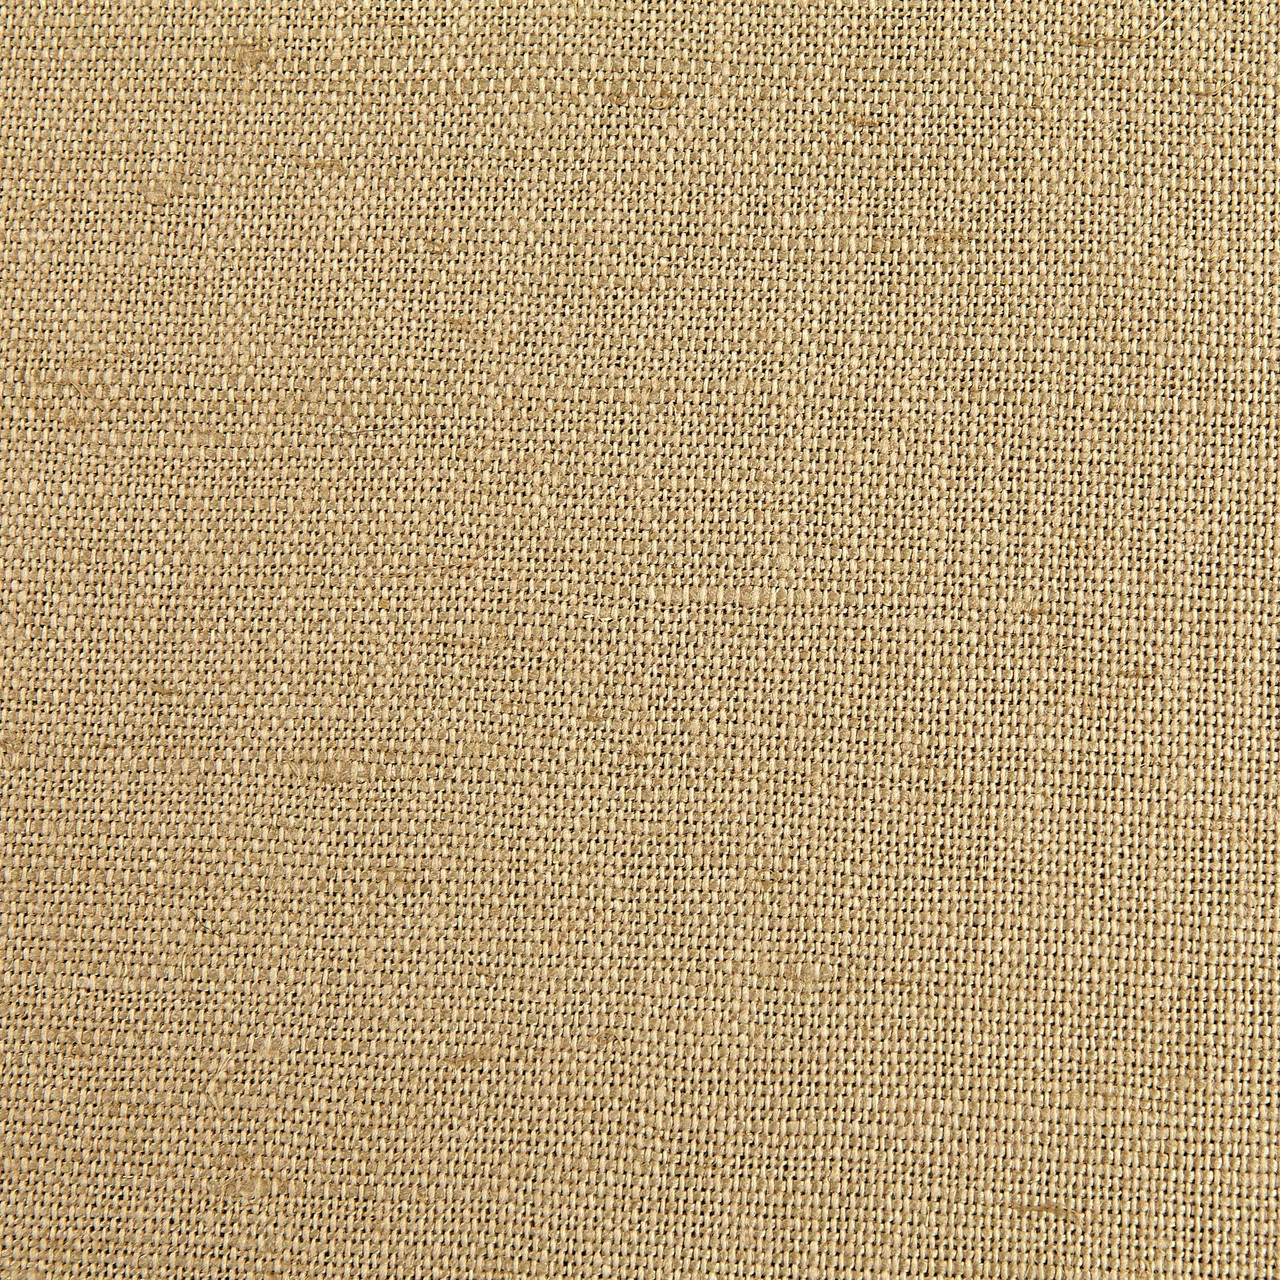 European Linen Blend Light Tan | Medium/Heavyweight Linen Fabric | Home  Decor Fabric | 54 Wide